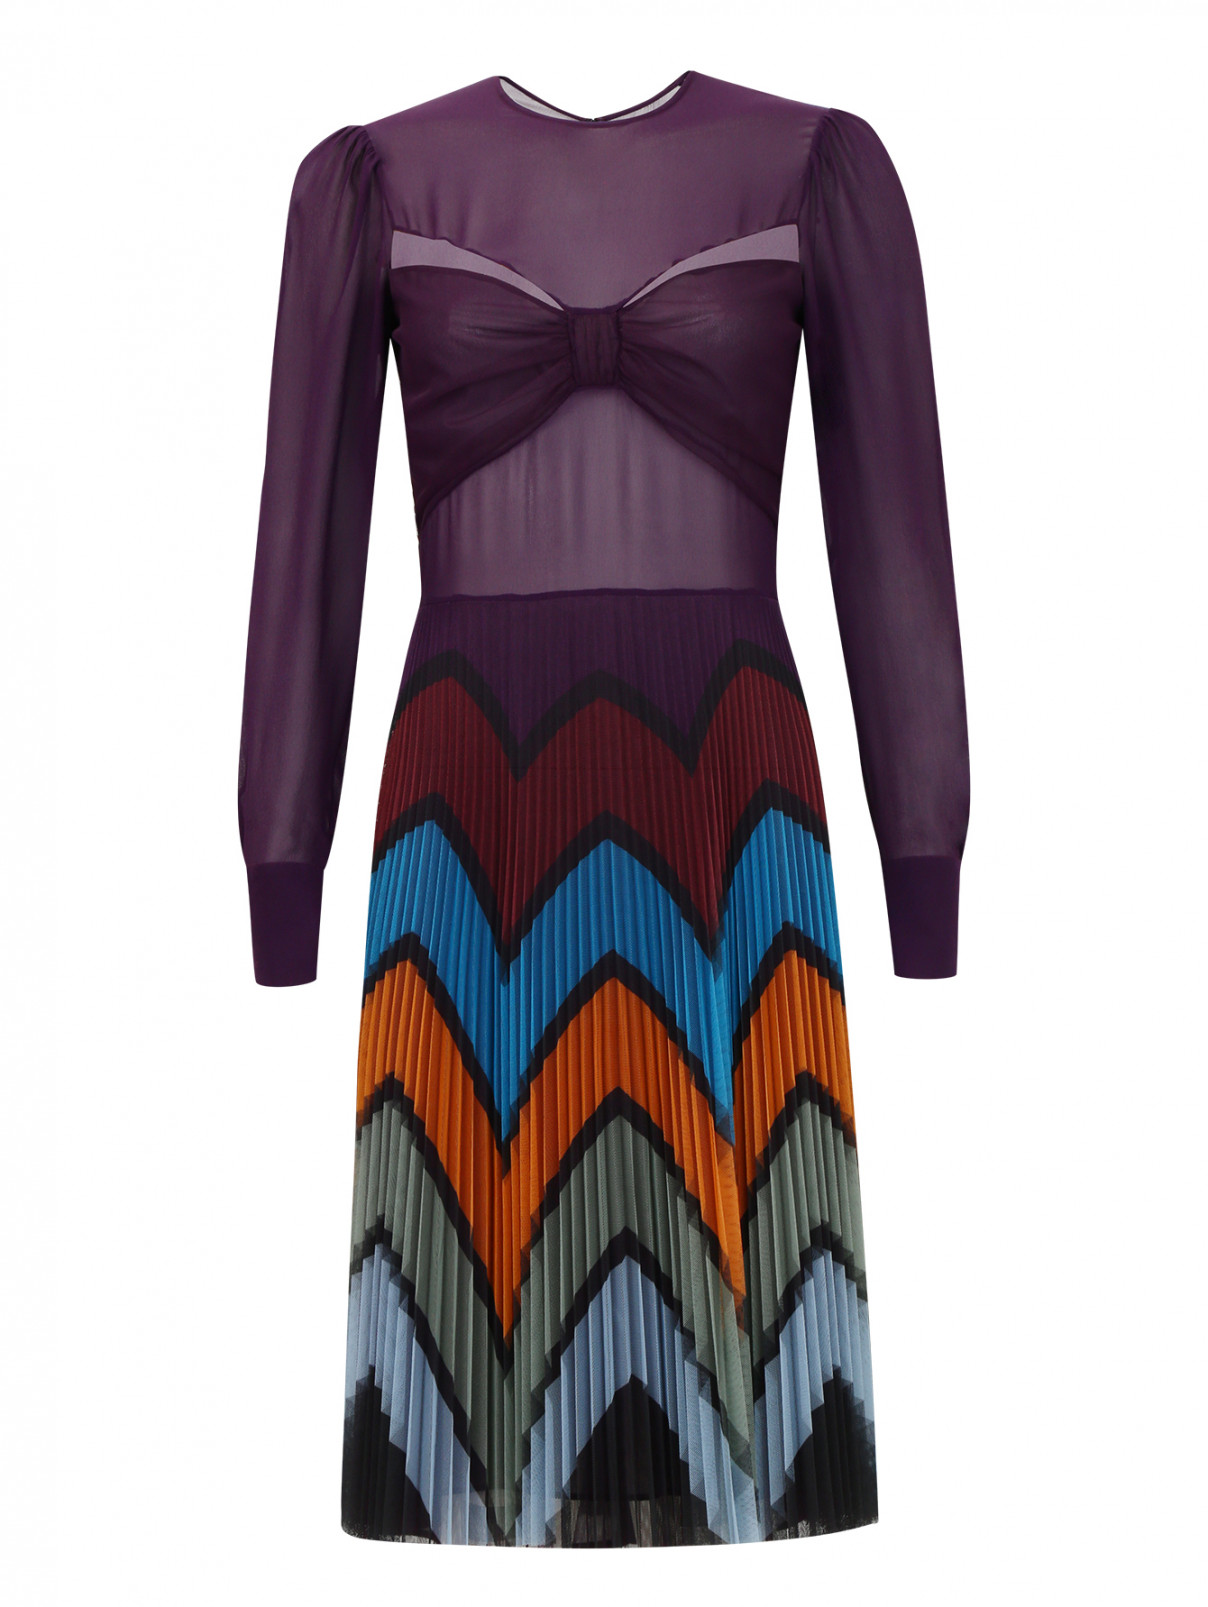 Платье-мини с плиссированной юбкой Mary Katrantzou  –  Общий вид  – Цвет:  Фиолетовый